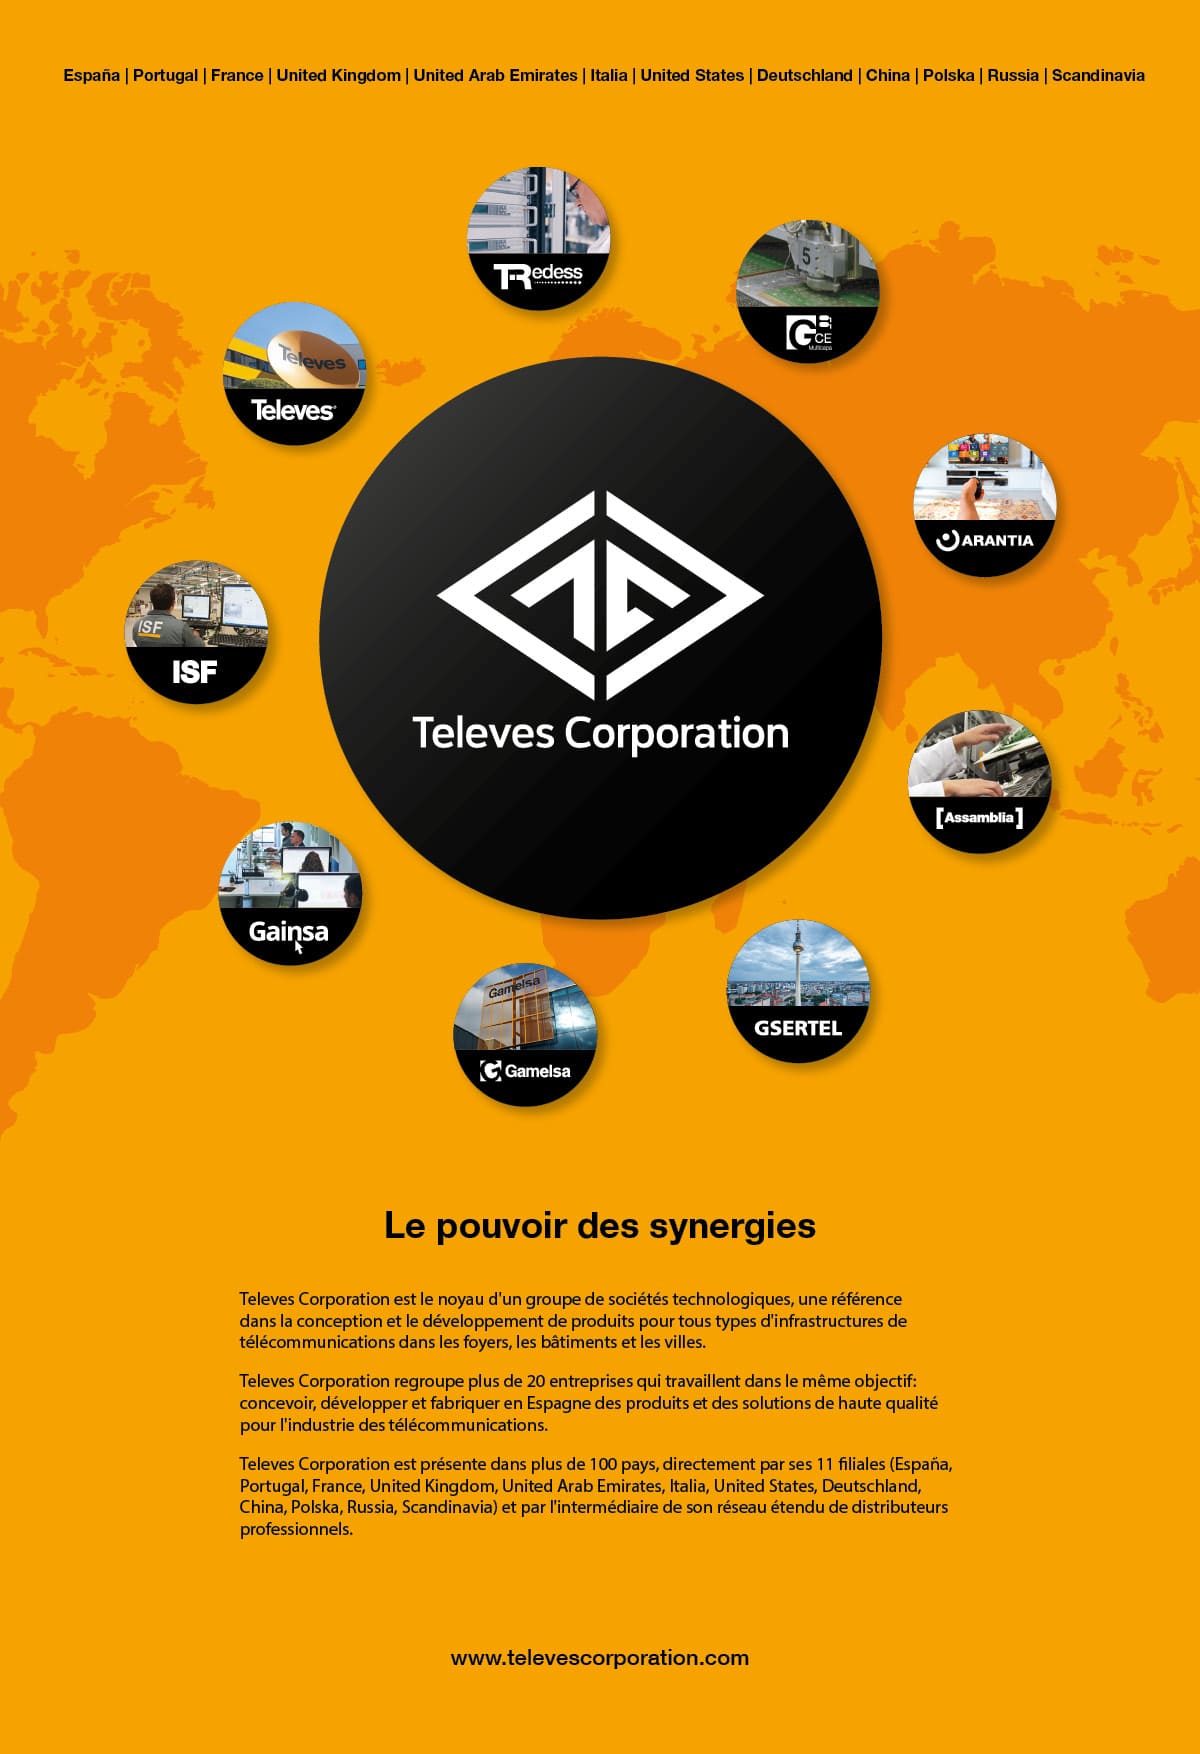 Televes Corporation, le pouvoir des synergies